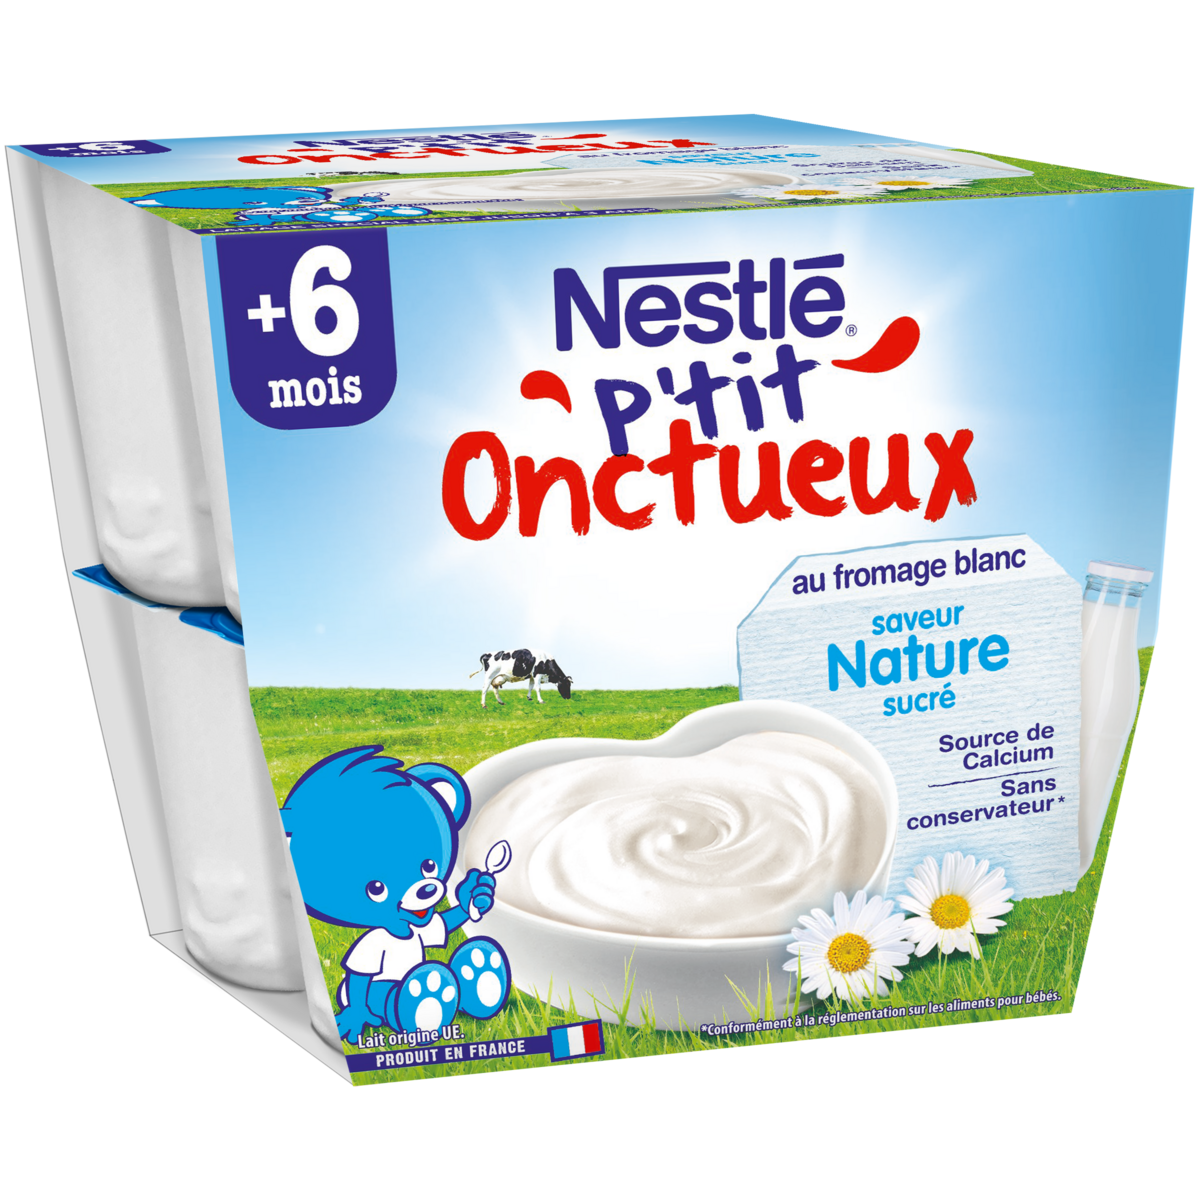 Nestle P Tit Onctueux Pot Dessert Au Fromage Blanc Nature Des 6 Mois 8x100g Pas Cher A Prix Auchan